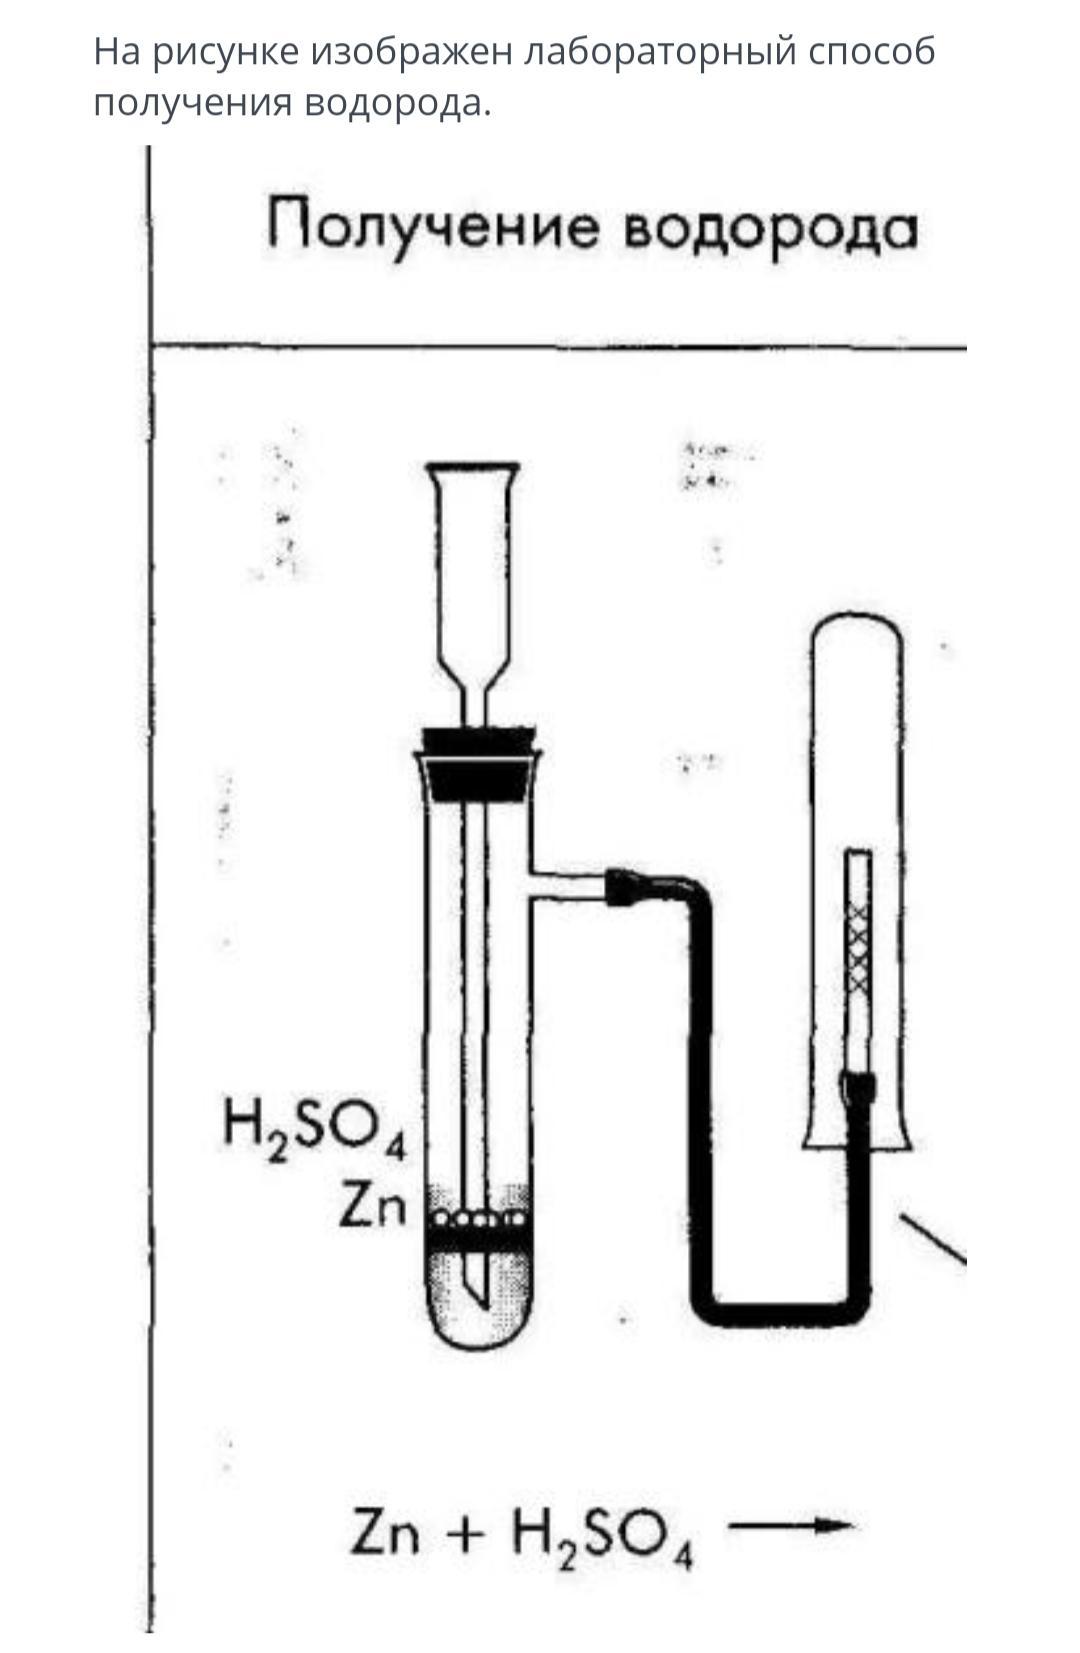 3 реакции получения водорода. Рисунок получение водорода методом вытеснения воздуха. Лабораторный прибор для получения водорода. Лабораторный способ получения водорода. Схема получения водорода в лаборатории.